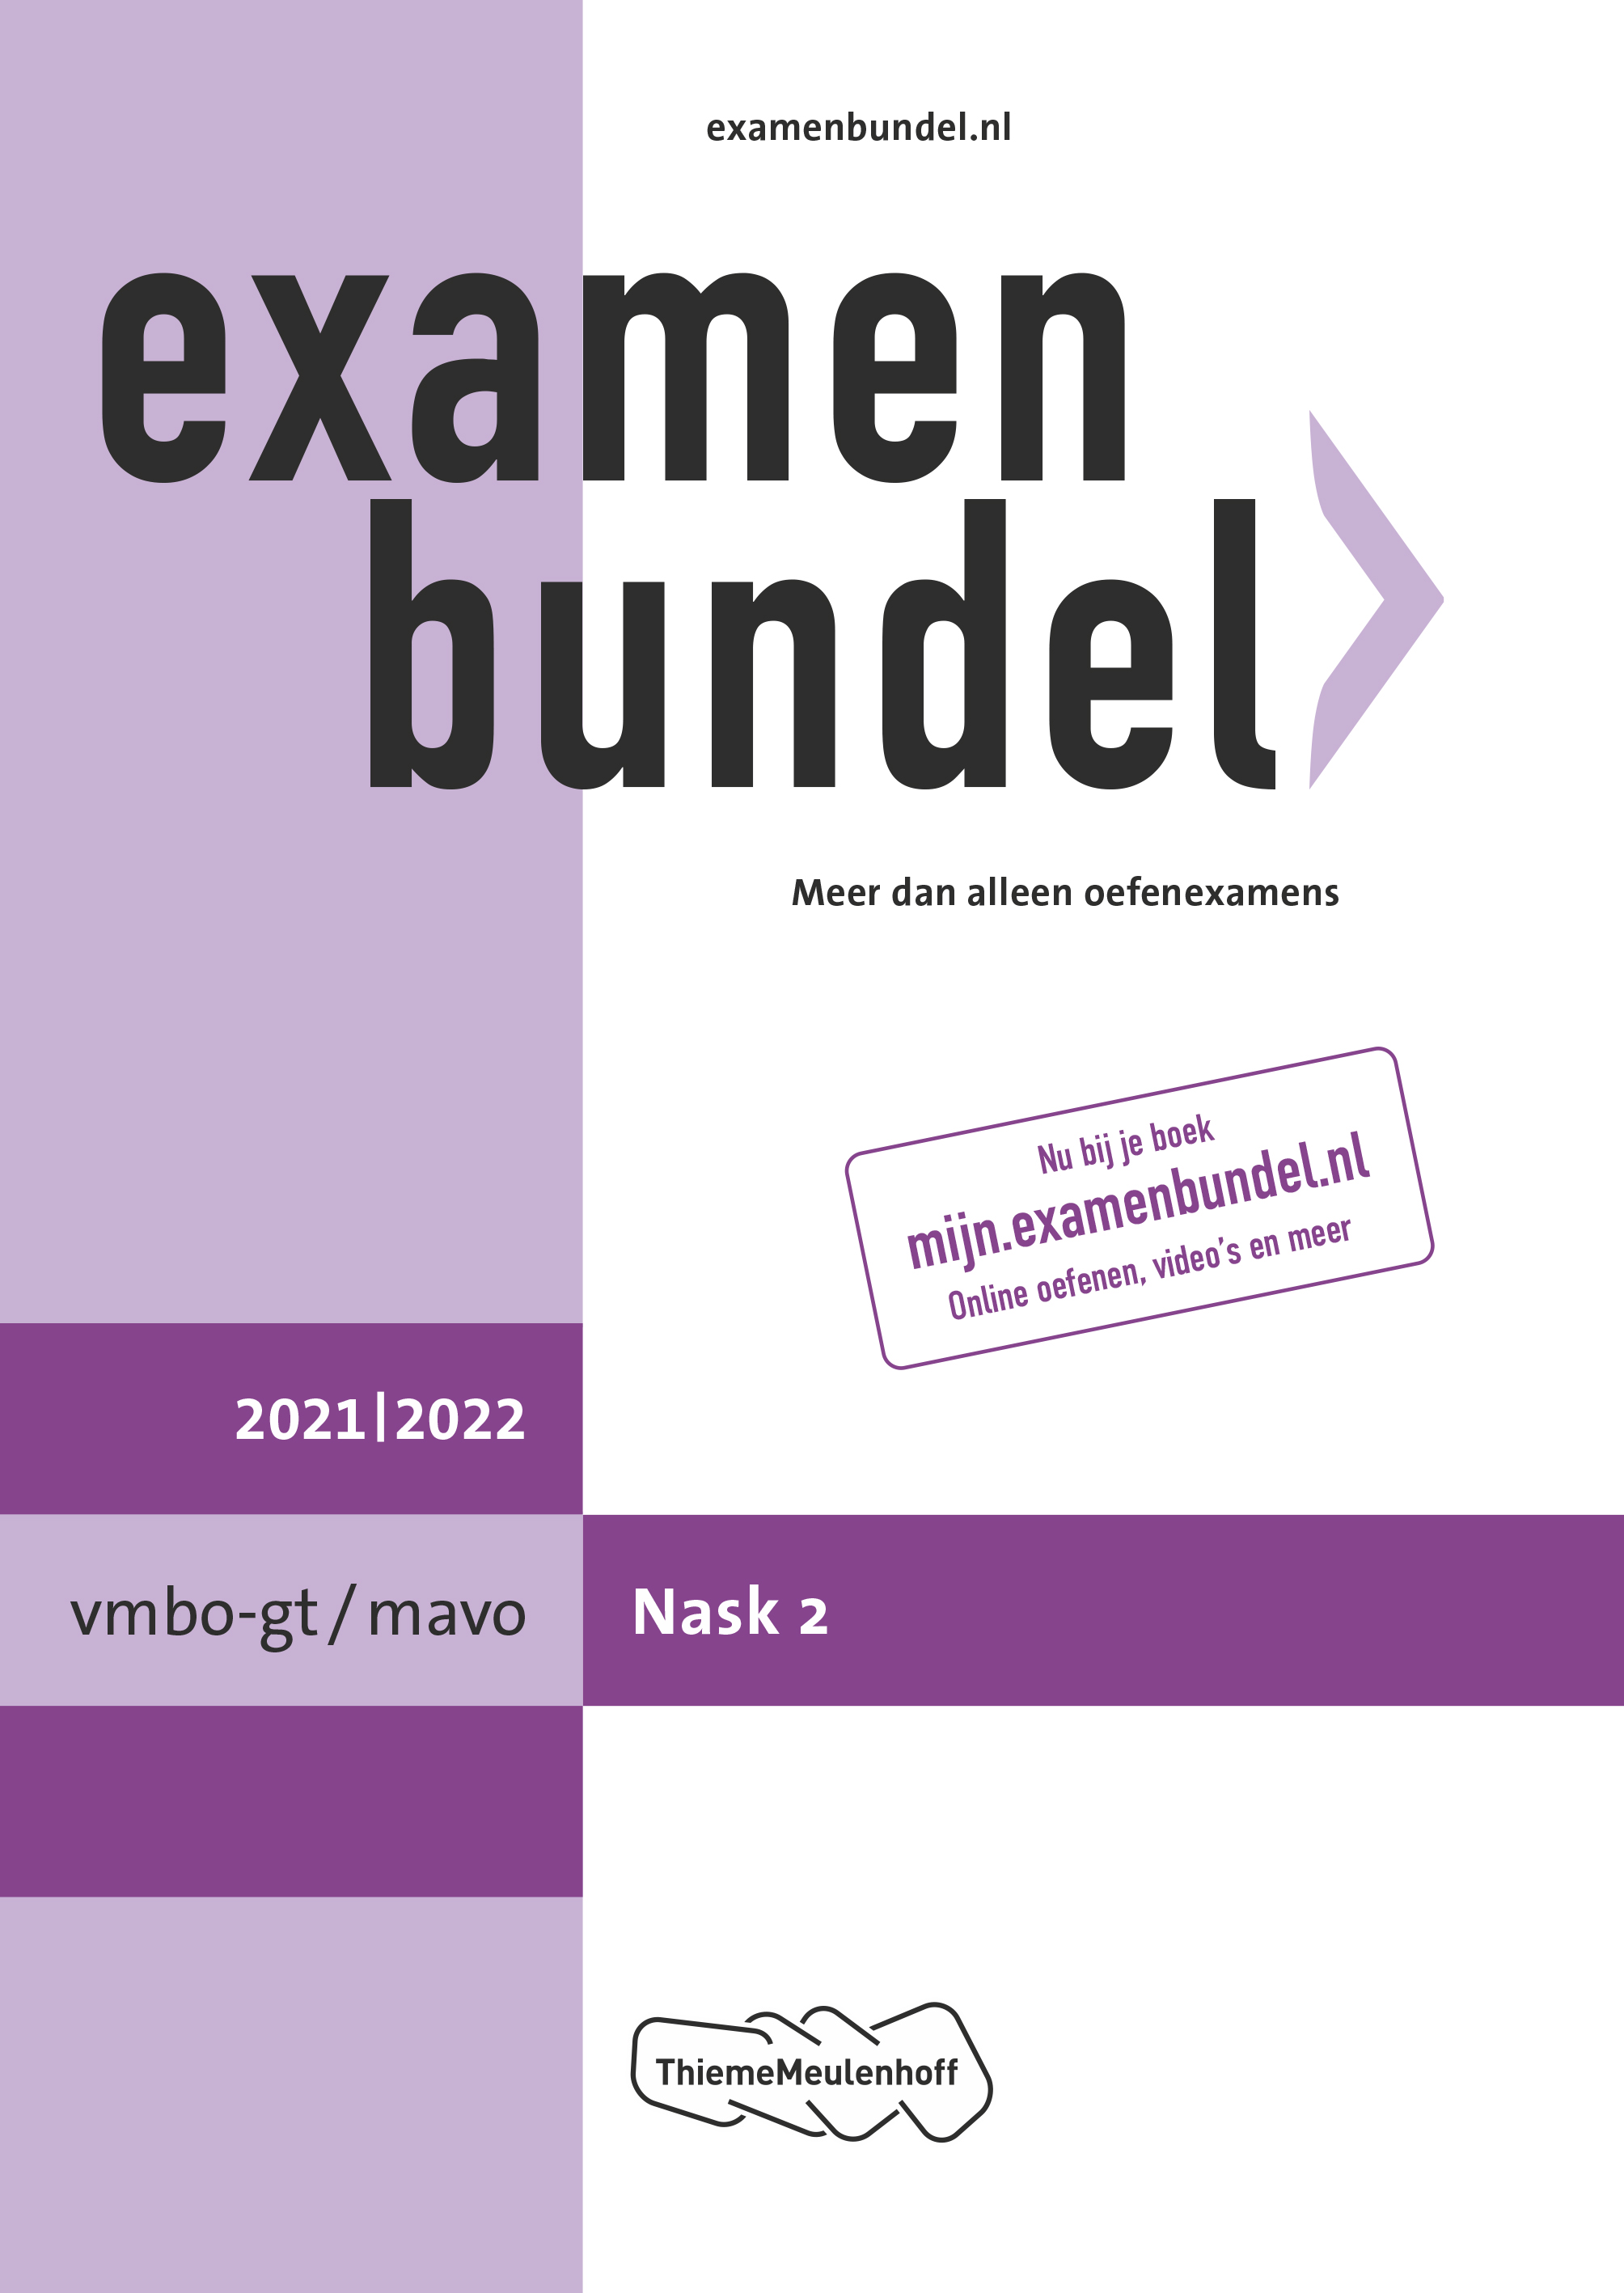 Examenbundel vmbo-gt/mavo NaSk2 2021/2022